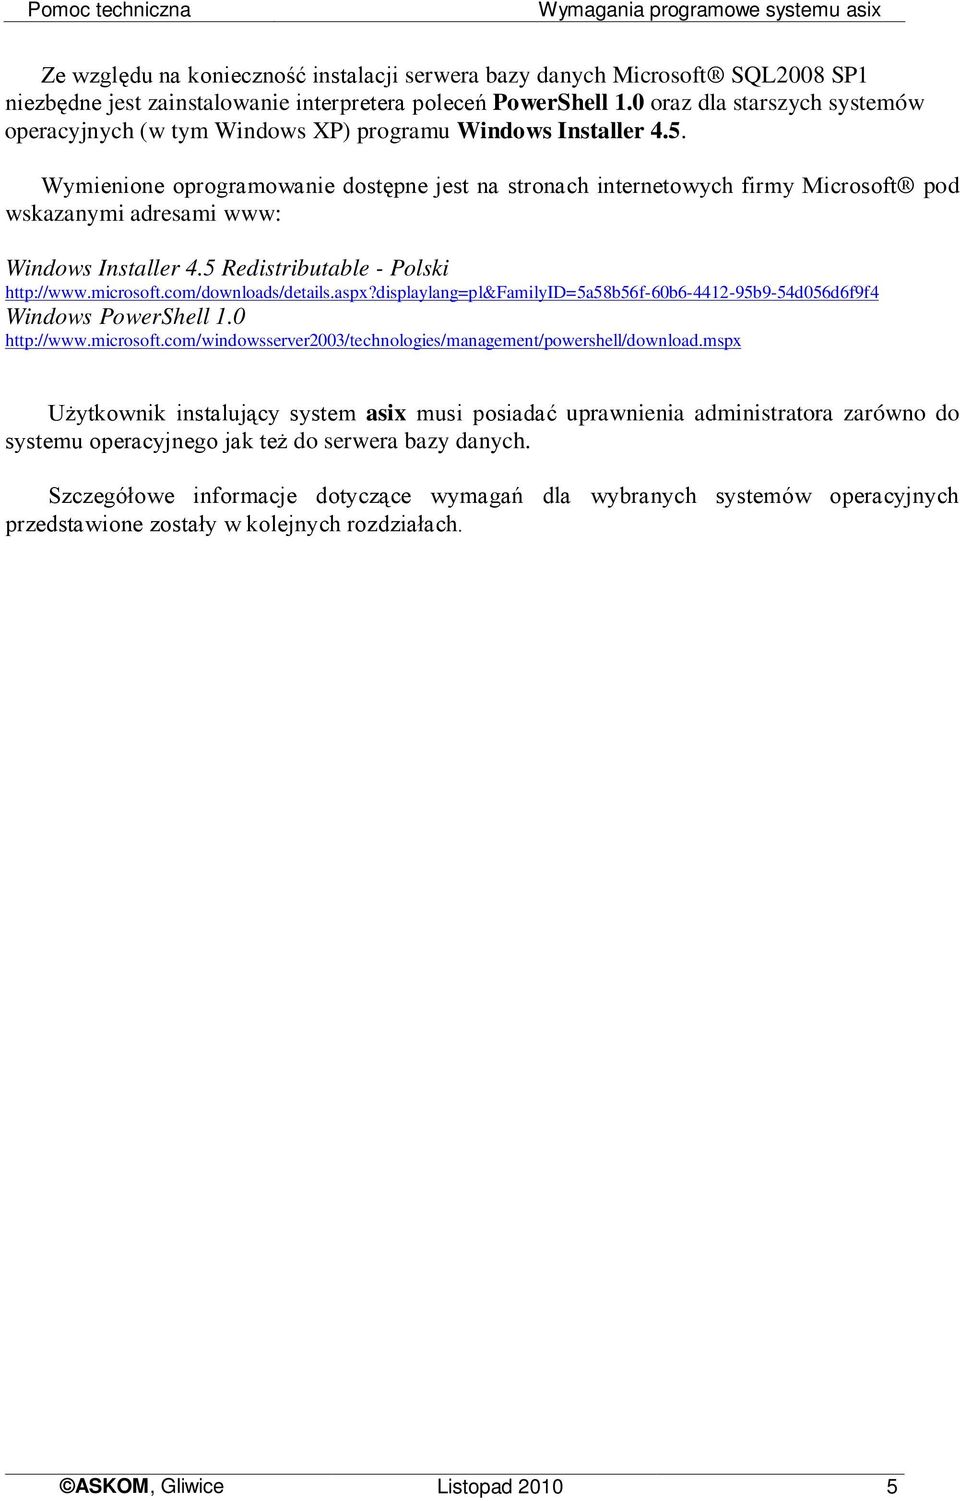 Wymienione oprogramowanie dostępne jest na stronach internetowych firmy Microsoft pod wskazanymi adresami www: Windows Installer 4.5 Redistributable - Polski http://www.microsoft.